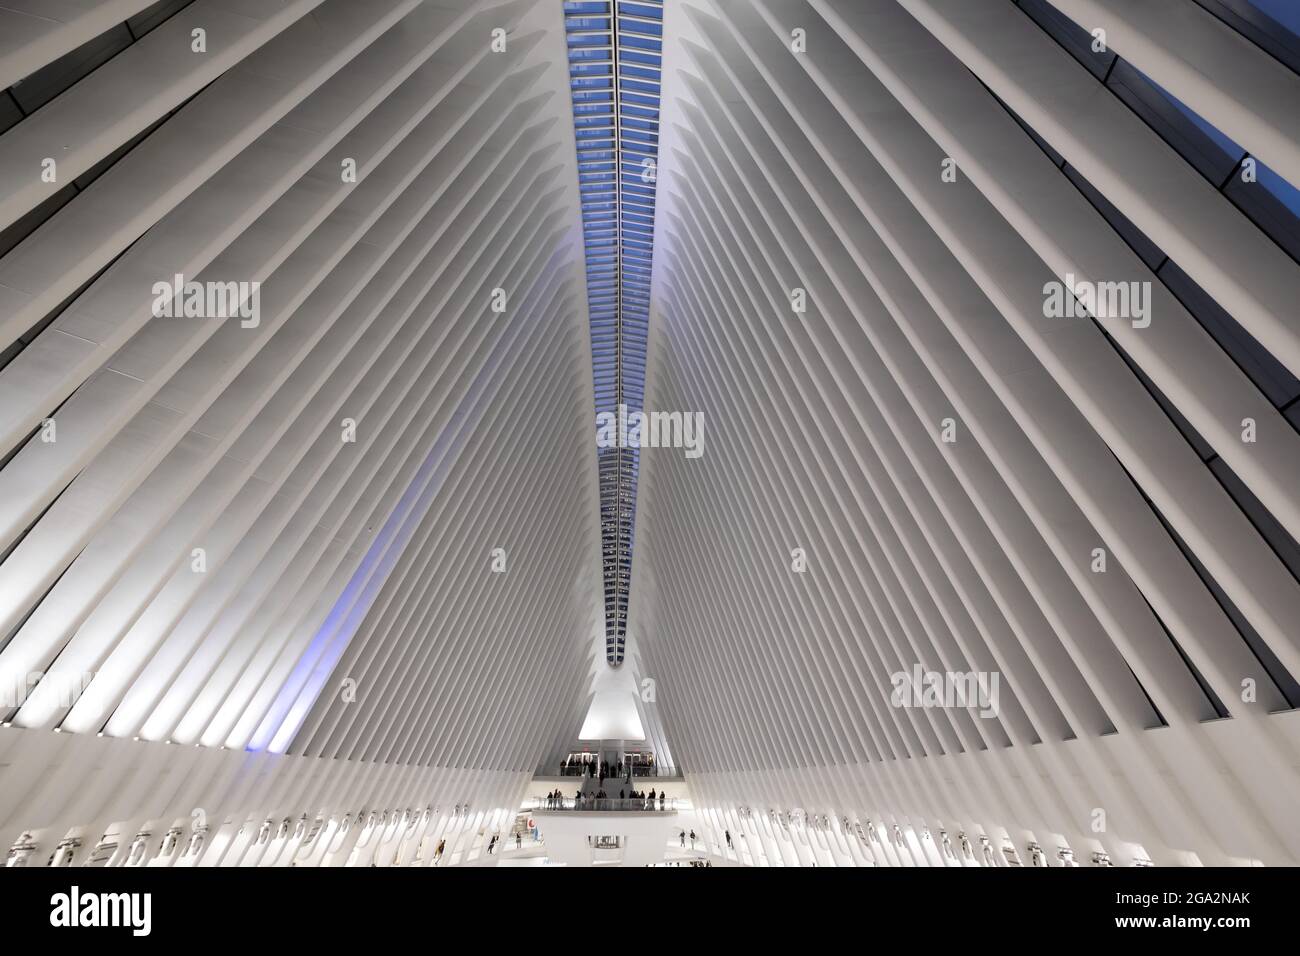 Vista interna dell'Oculus, la stazione del terminal del World Trade Center, un centro di trasporti e shopping progettato da Santiago Calatrava per assomigliare ... Foto Stock